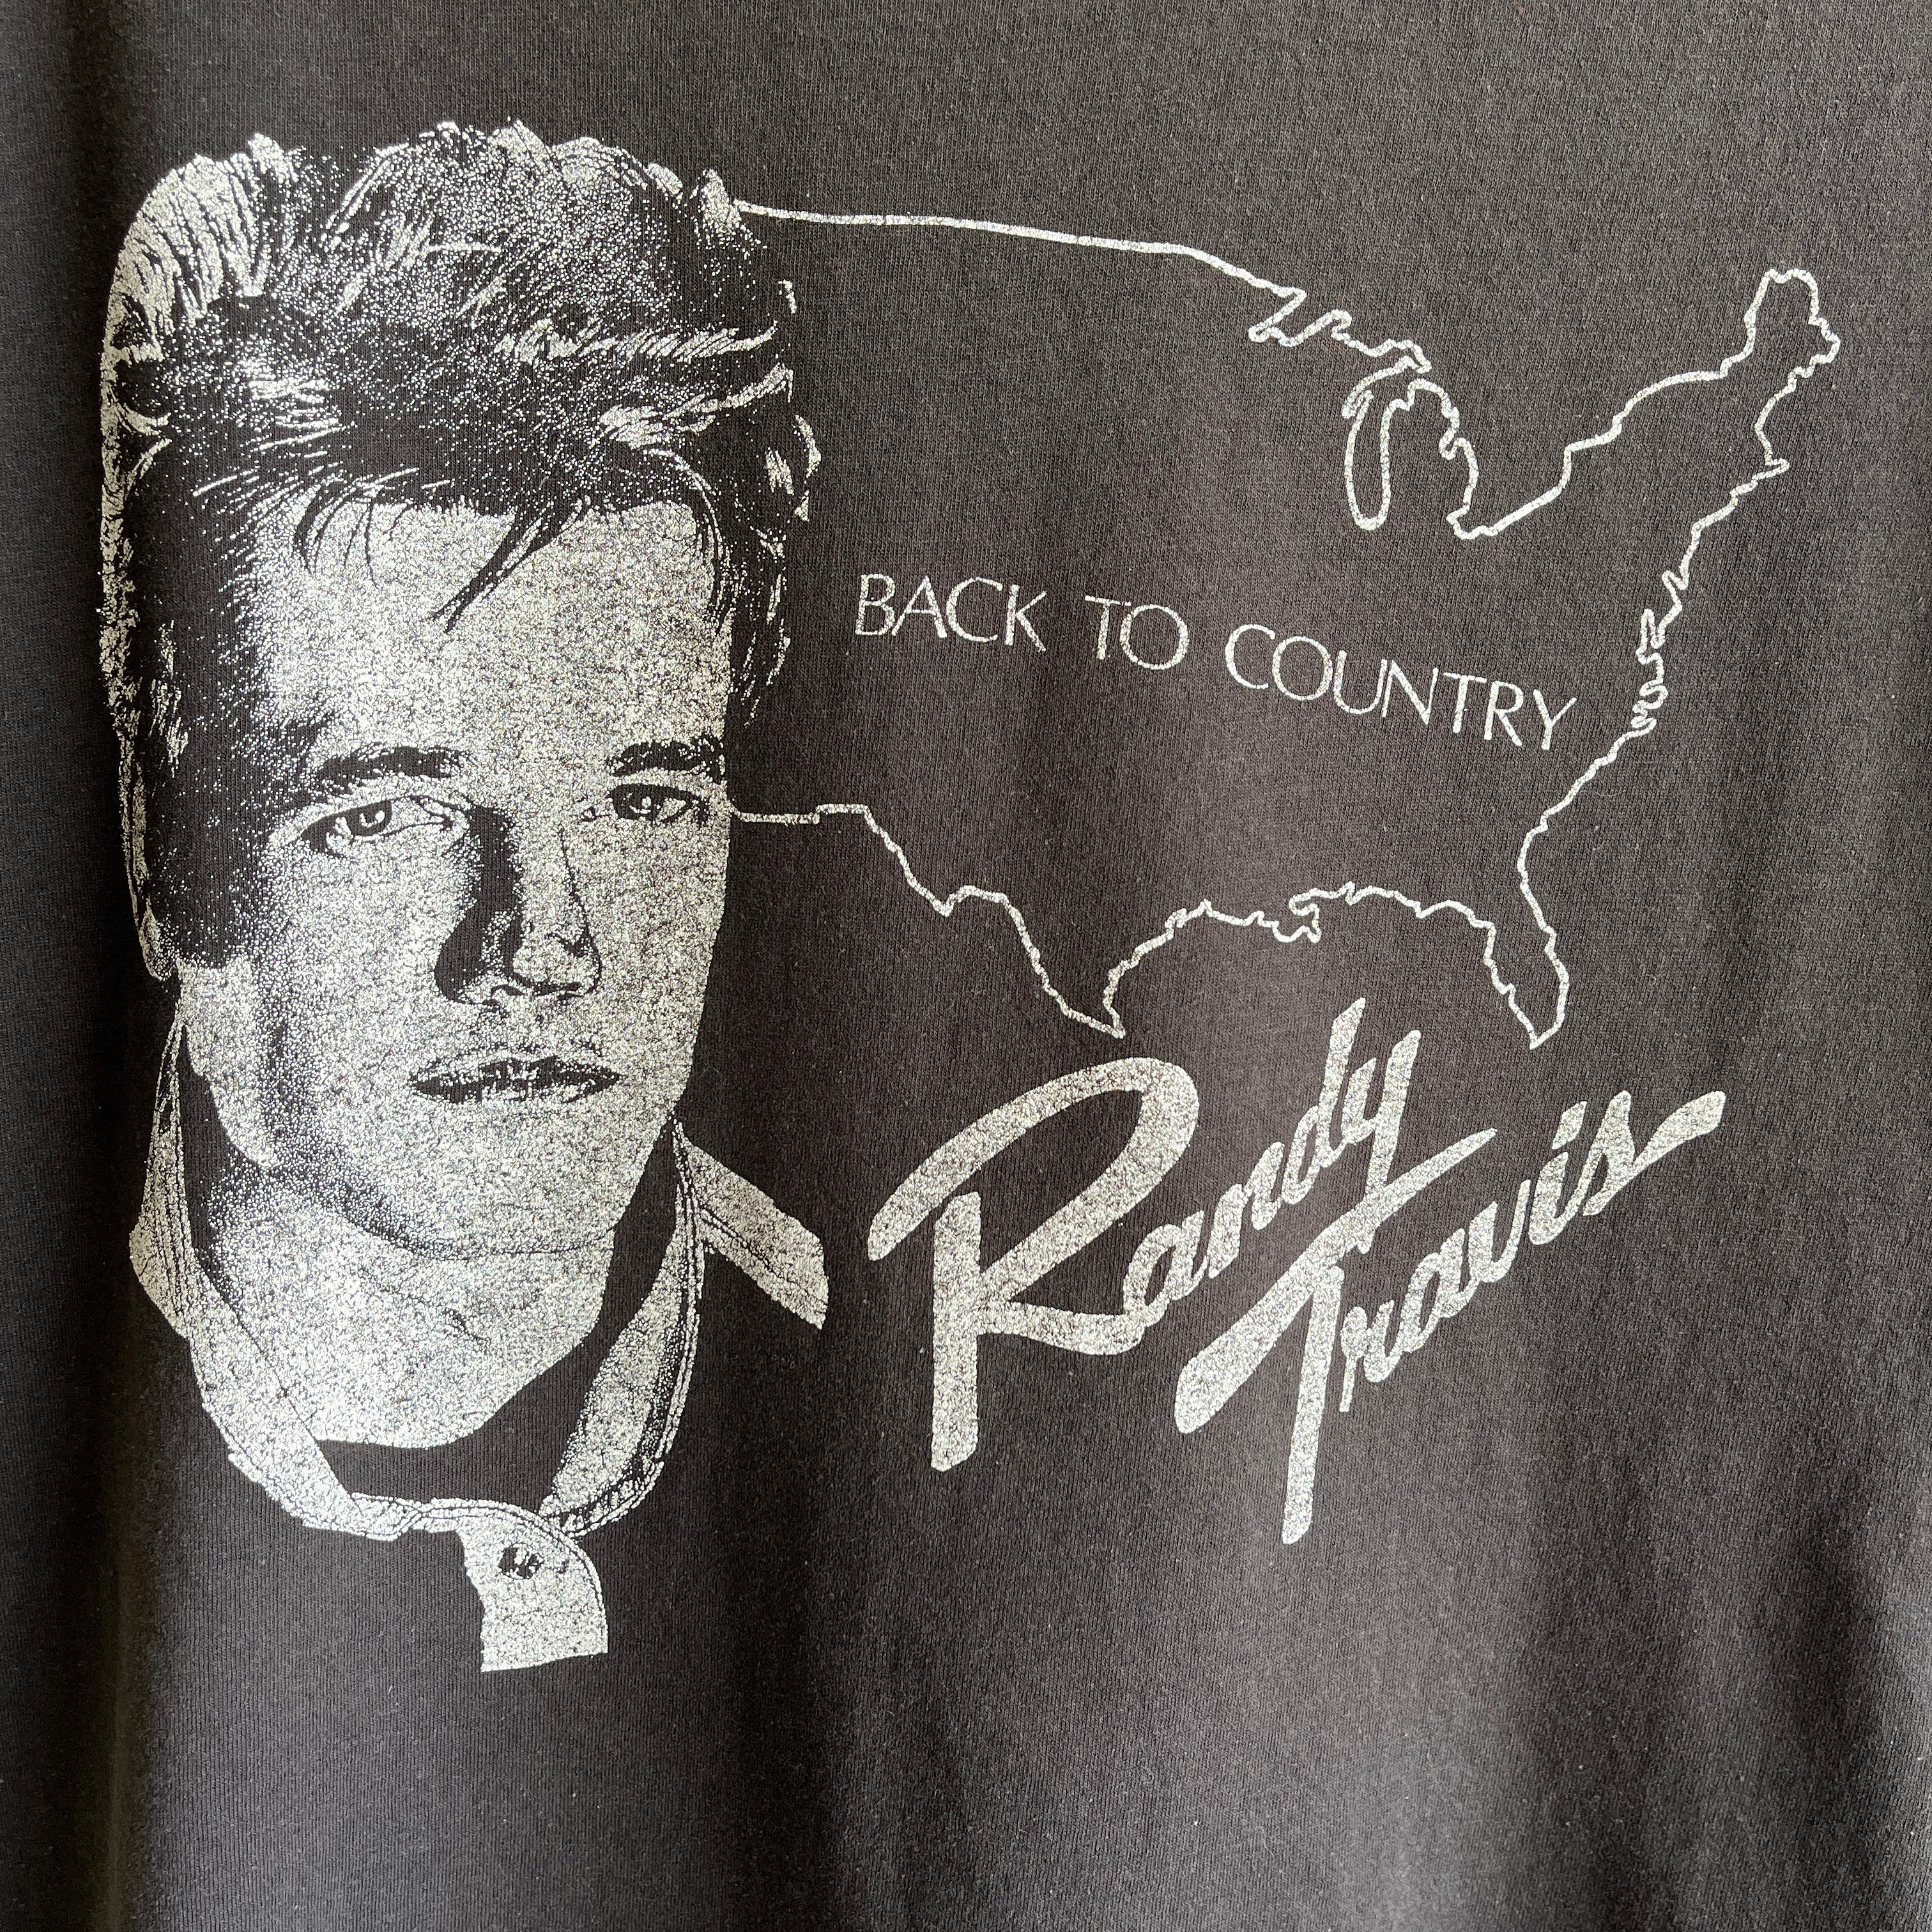 T-shirt de musique de petite taille Randy Travis des années 1980